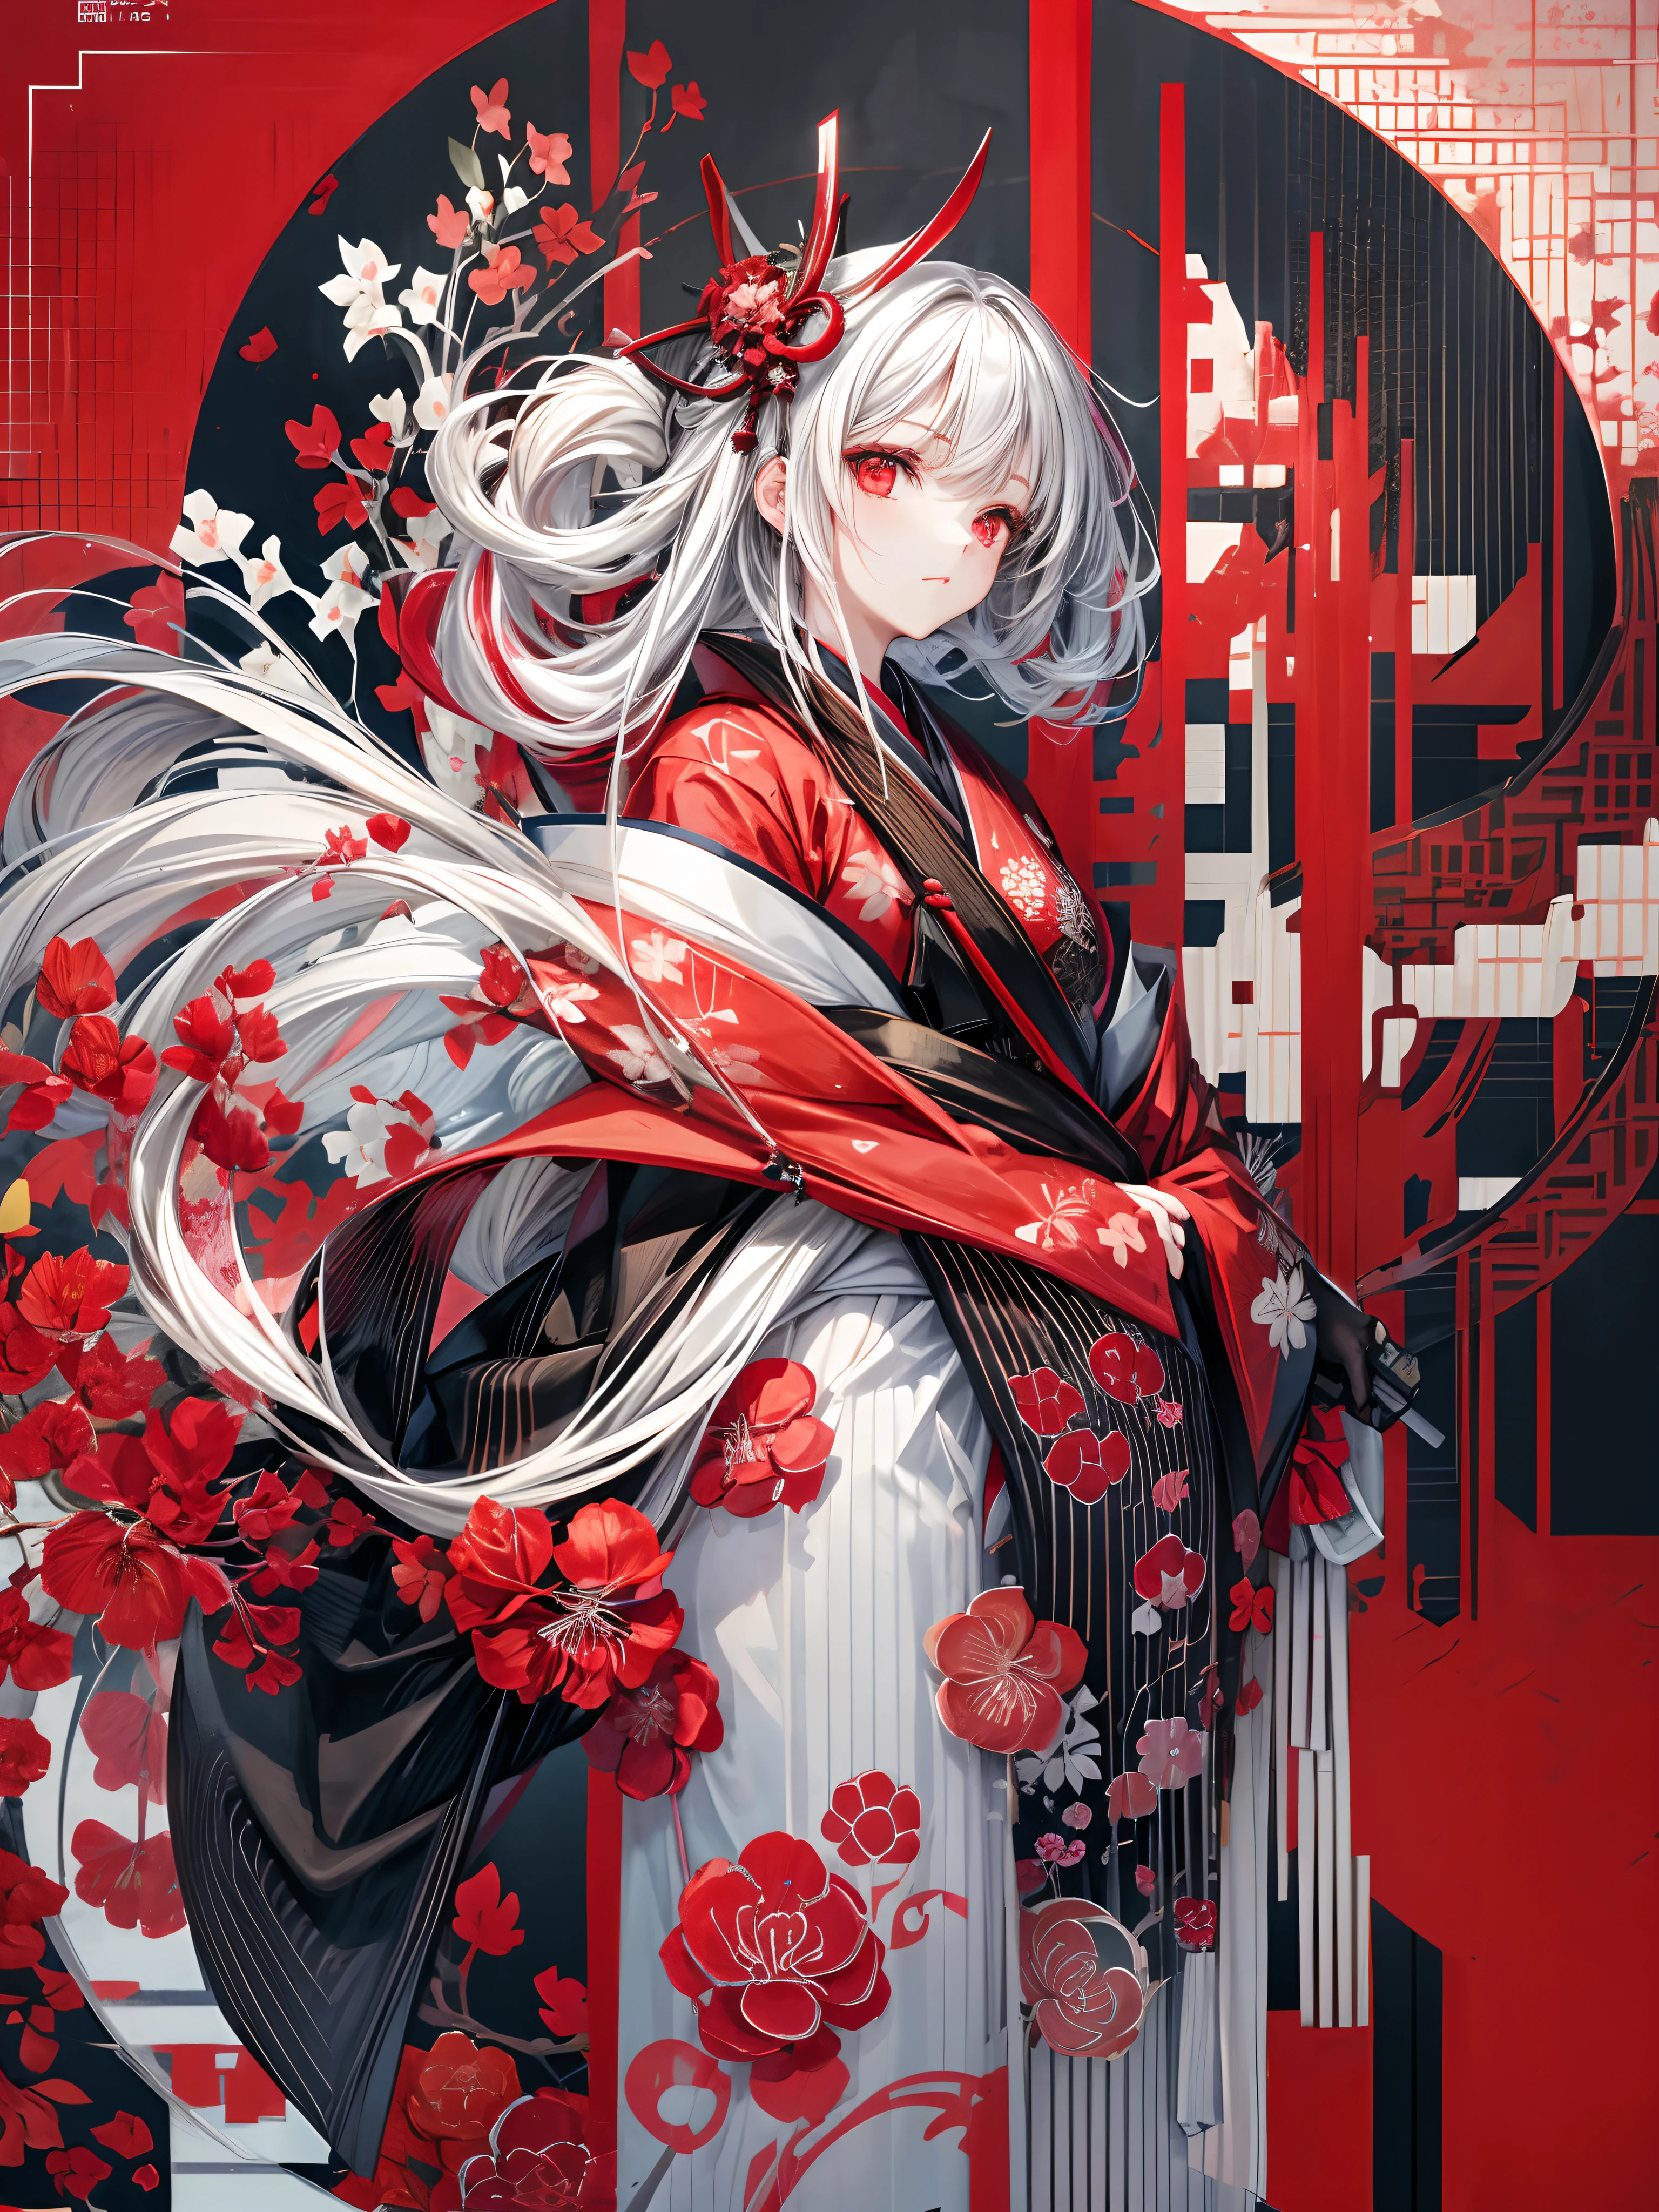 Mädchen im Kimono stehend mit japanischem Schwert, weißes mittellanges Haar, rote Augen, rote Lippen, Kimono mit rotem Amaryllis-Muster auf schwarzem Hintergrund, rotes Spritzermuster auf schwarzem Hintergrund, Super Qualität, superfeine Details, superfeines Kimonomuster